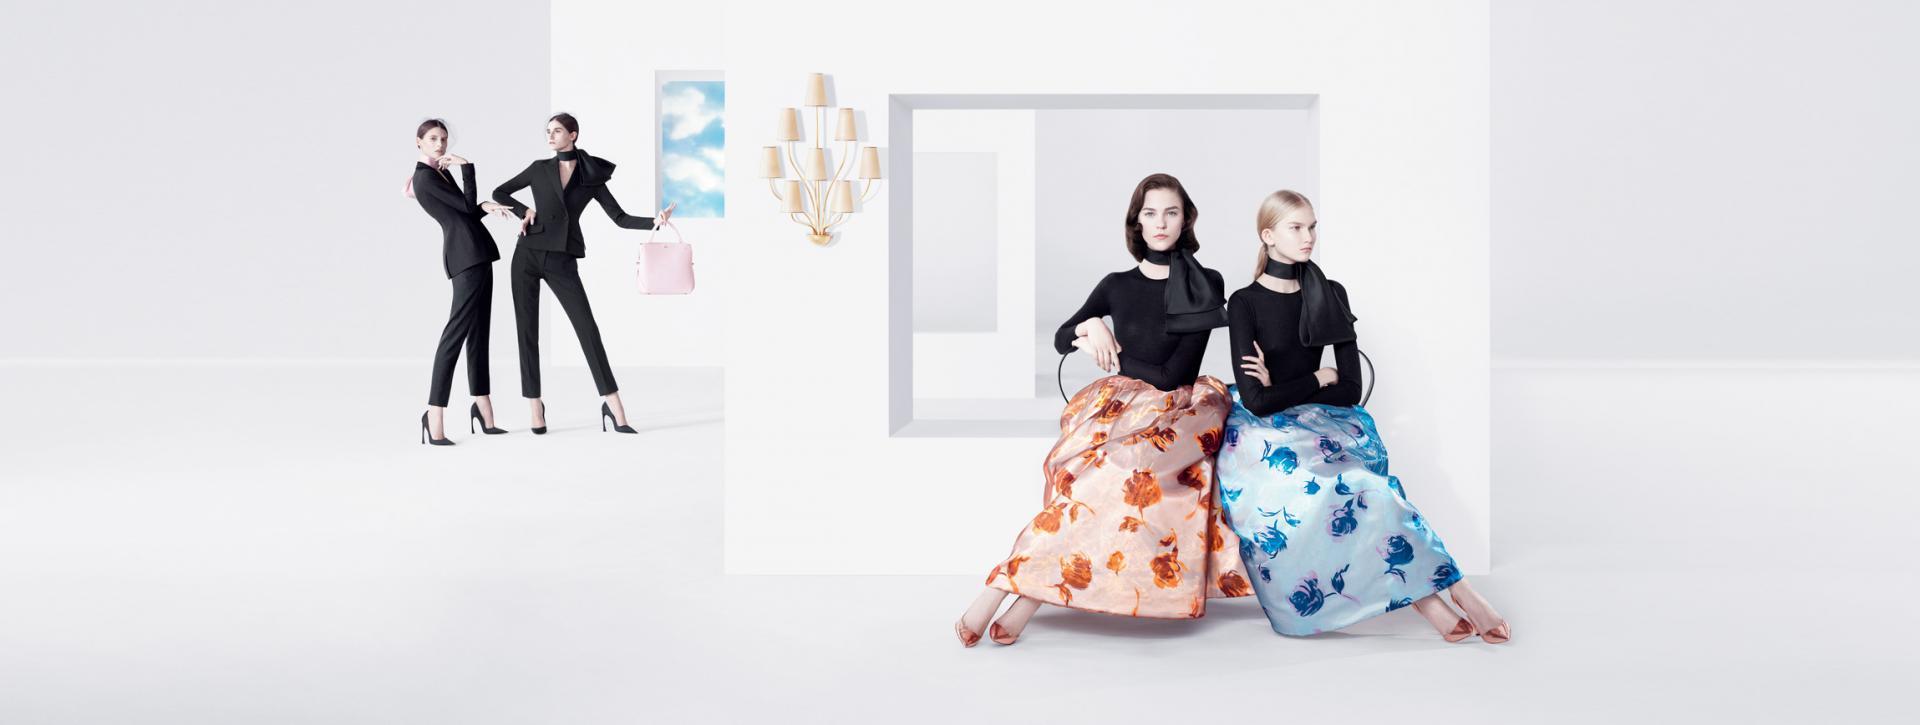 La nueva campaña de Dior